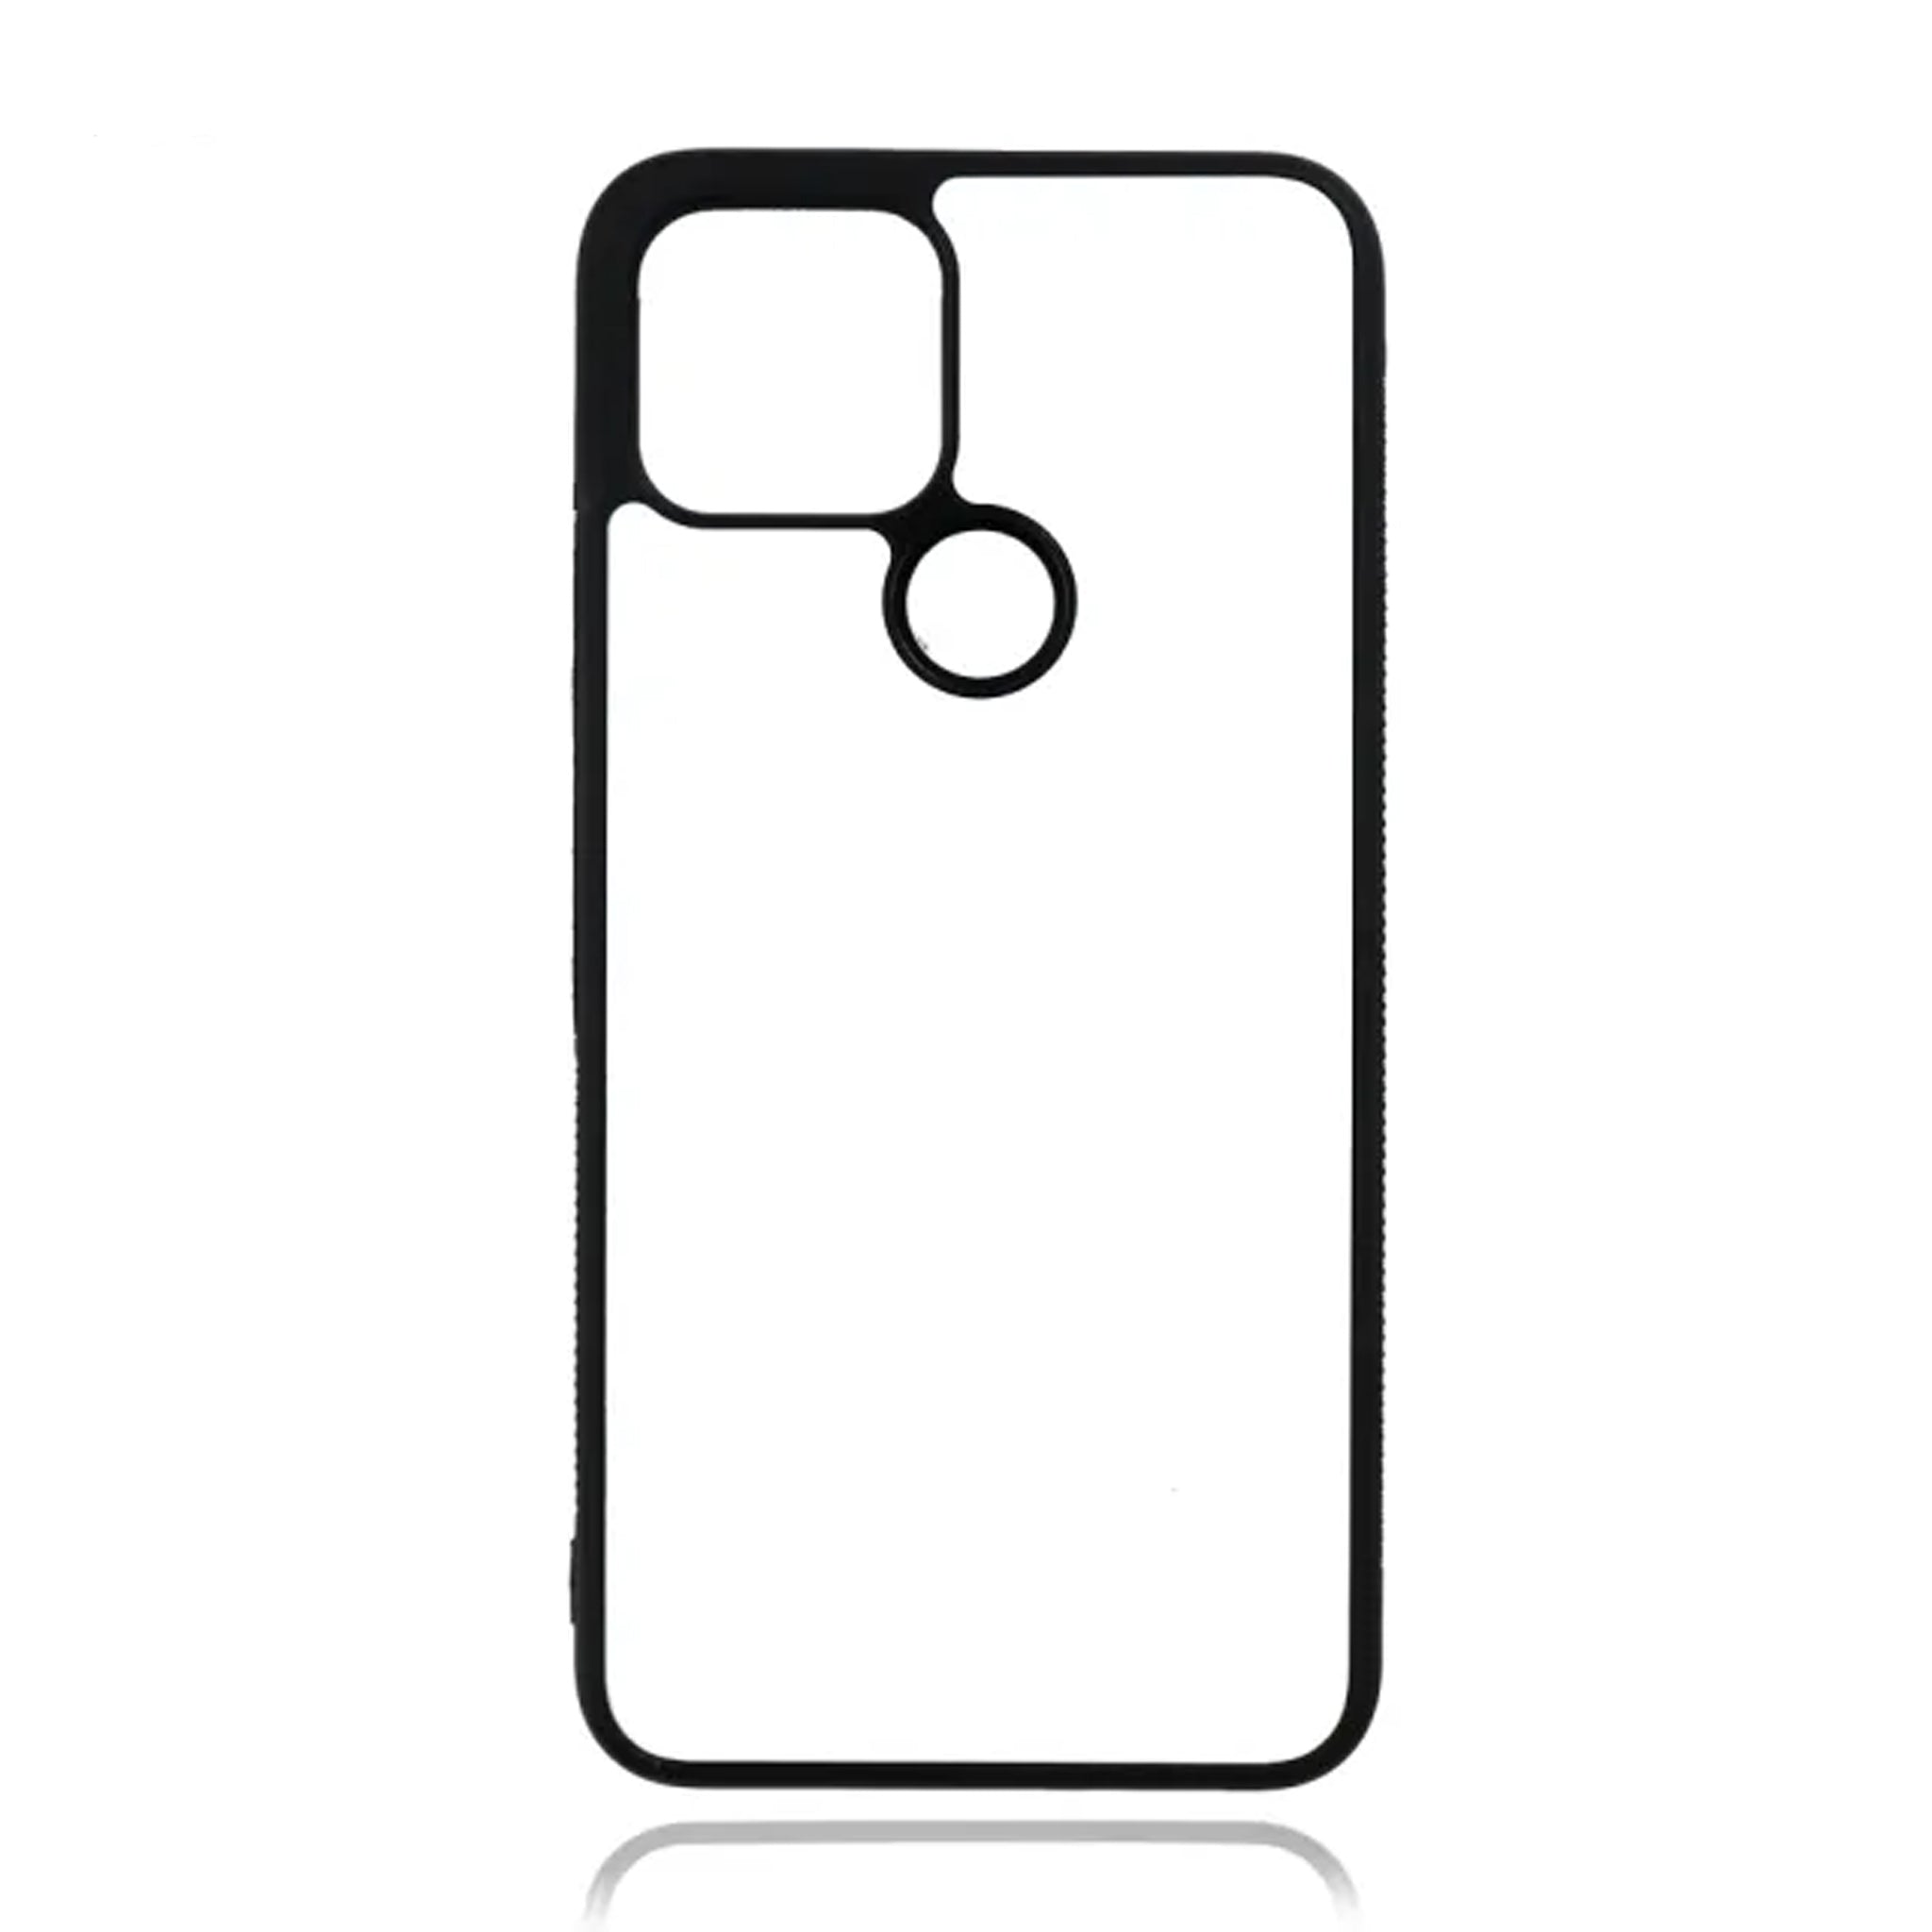 Google Pixel 5 XL - Black TPU Rubber Sublimation Phone Case